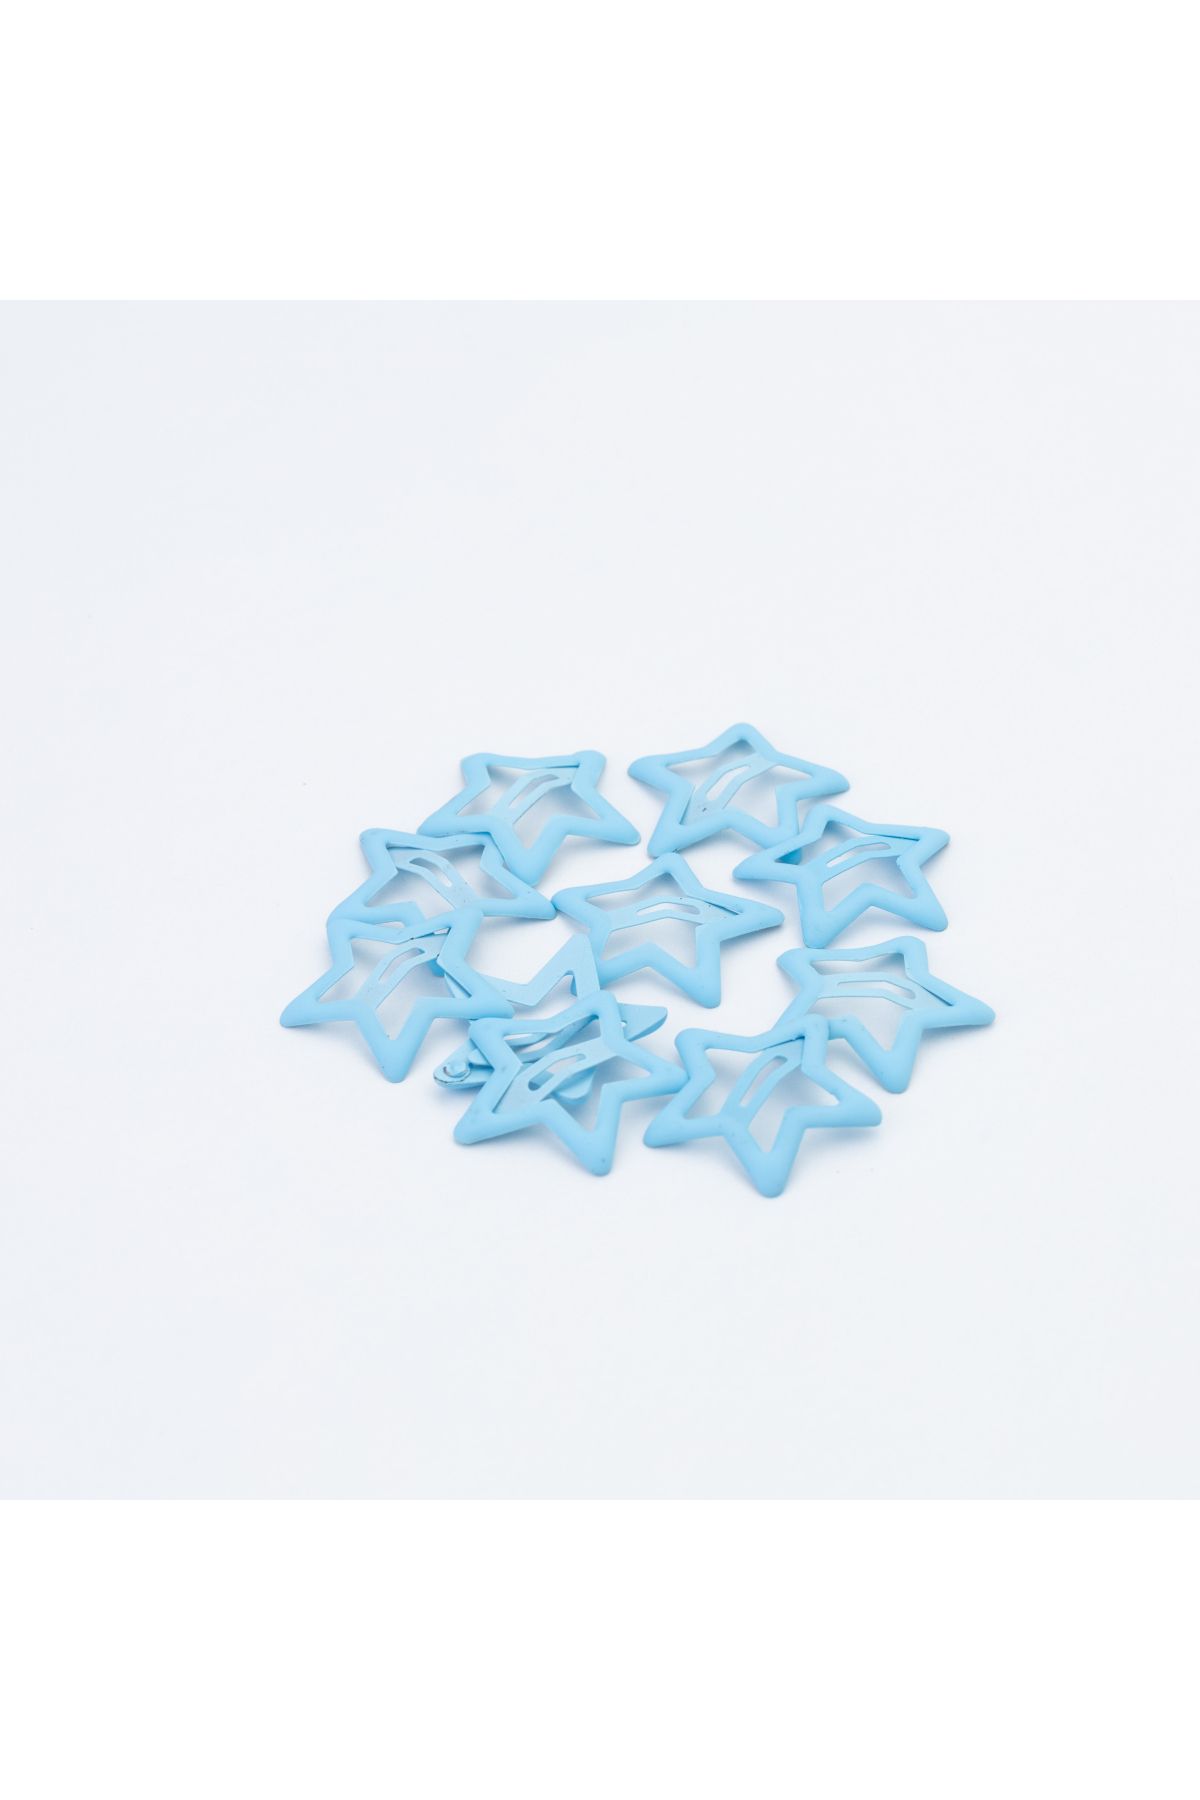 Bimotif Yıldız şekilli 10lu saç tokası seti, mavi